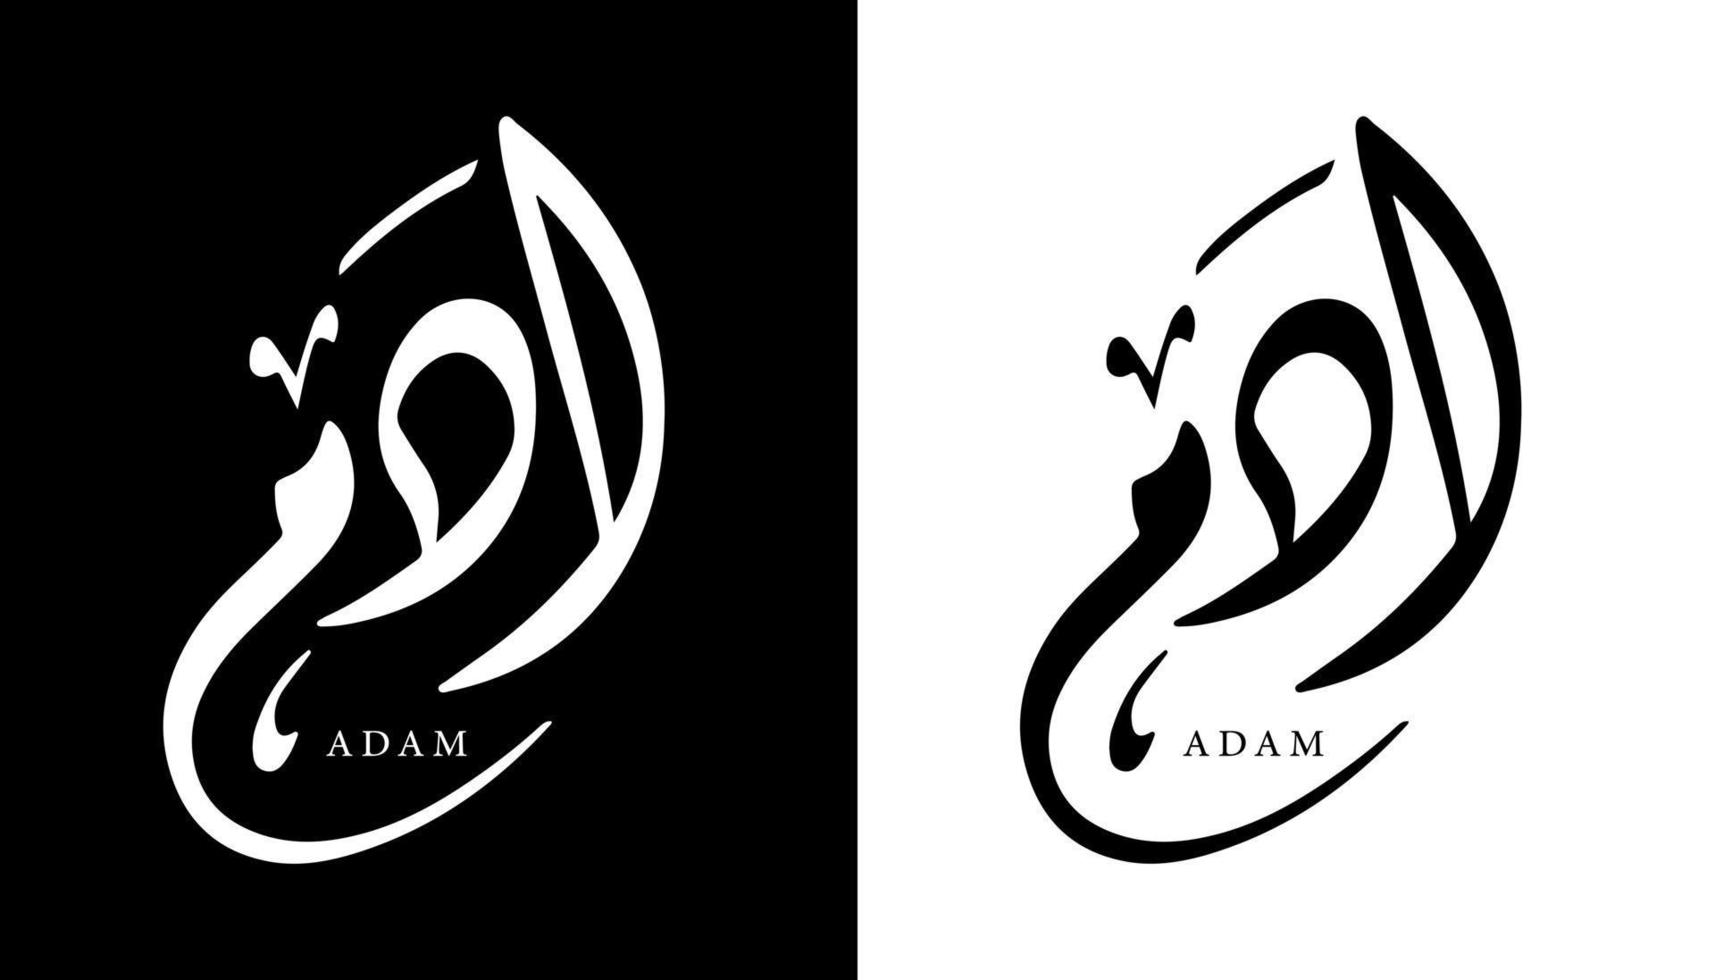 nome della calligrafia araba tradotto 'adam' lettere arabe alfabeto font lettering logo islamico illustrazione vettoriale